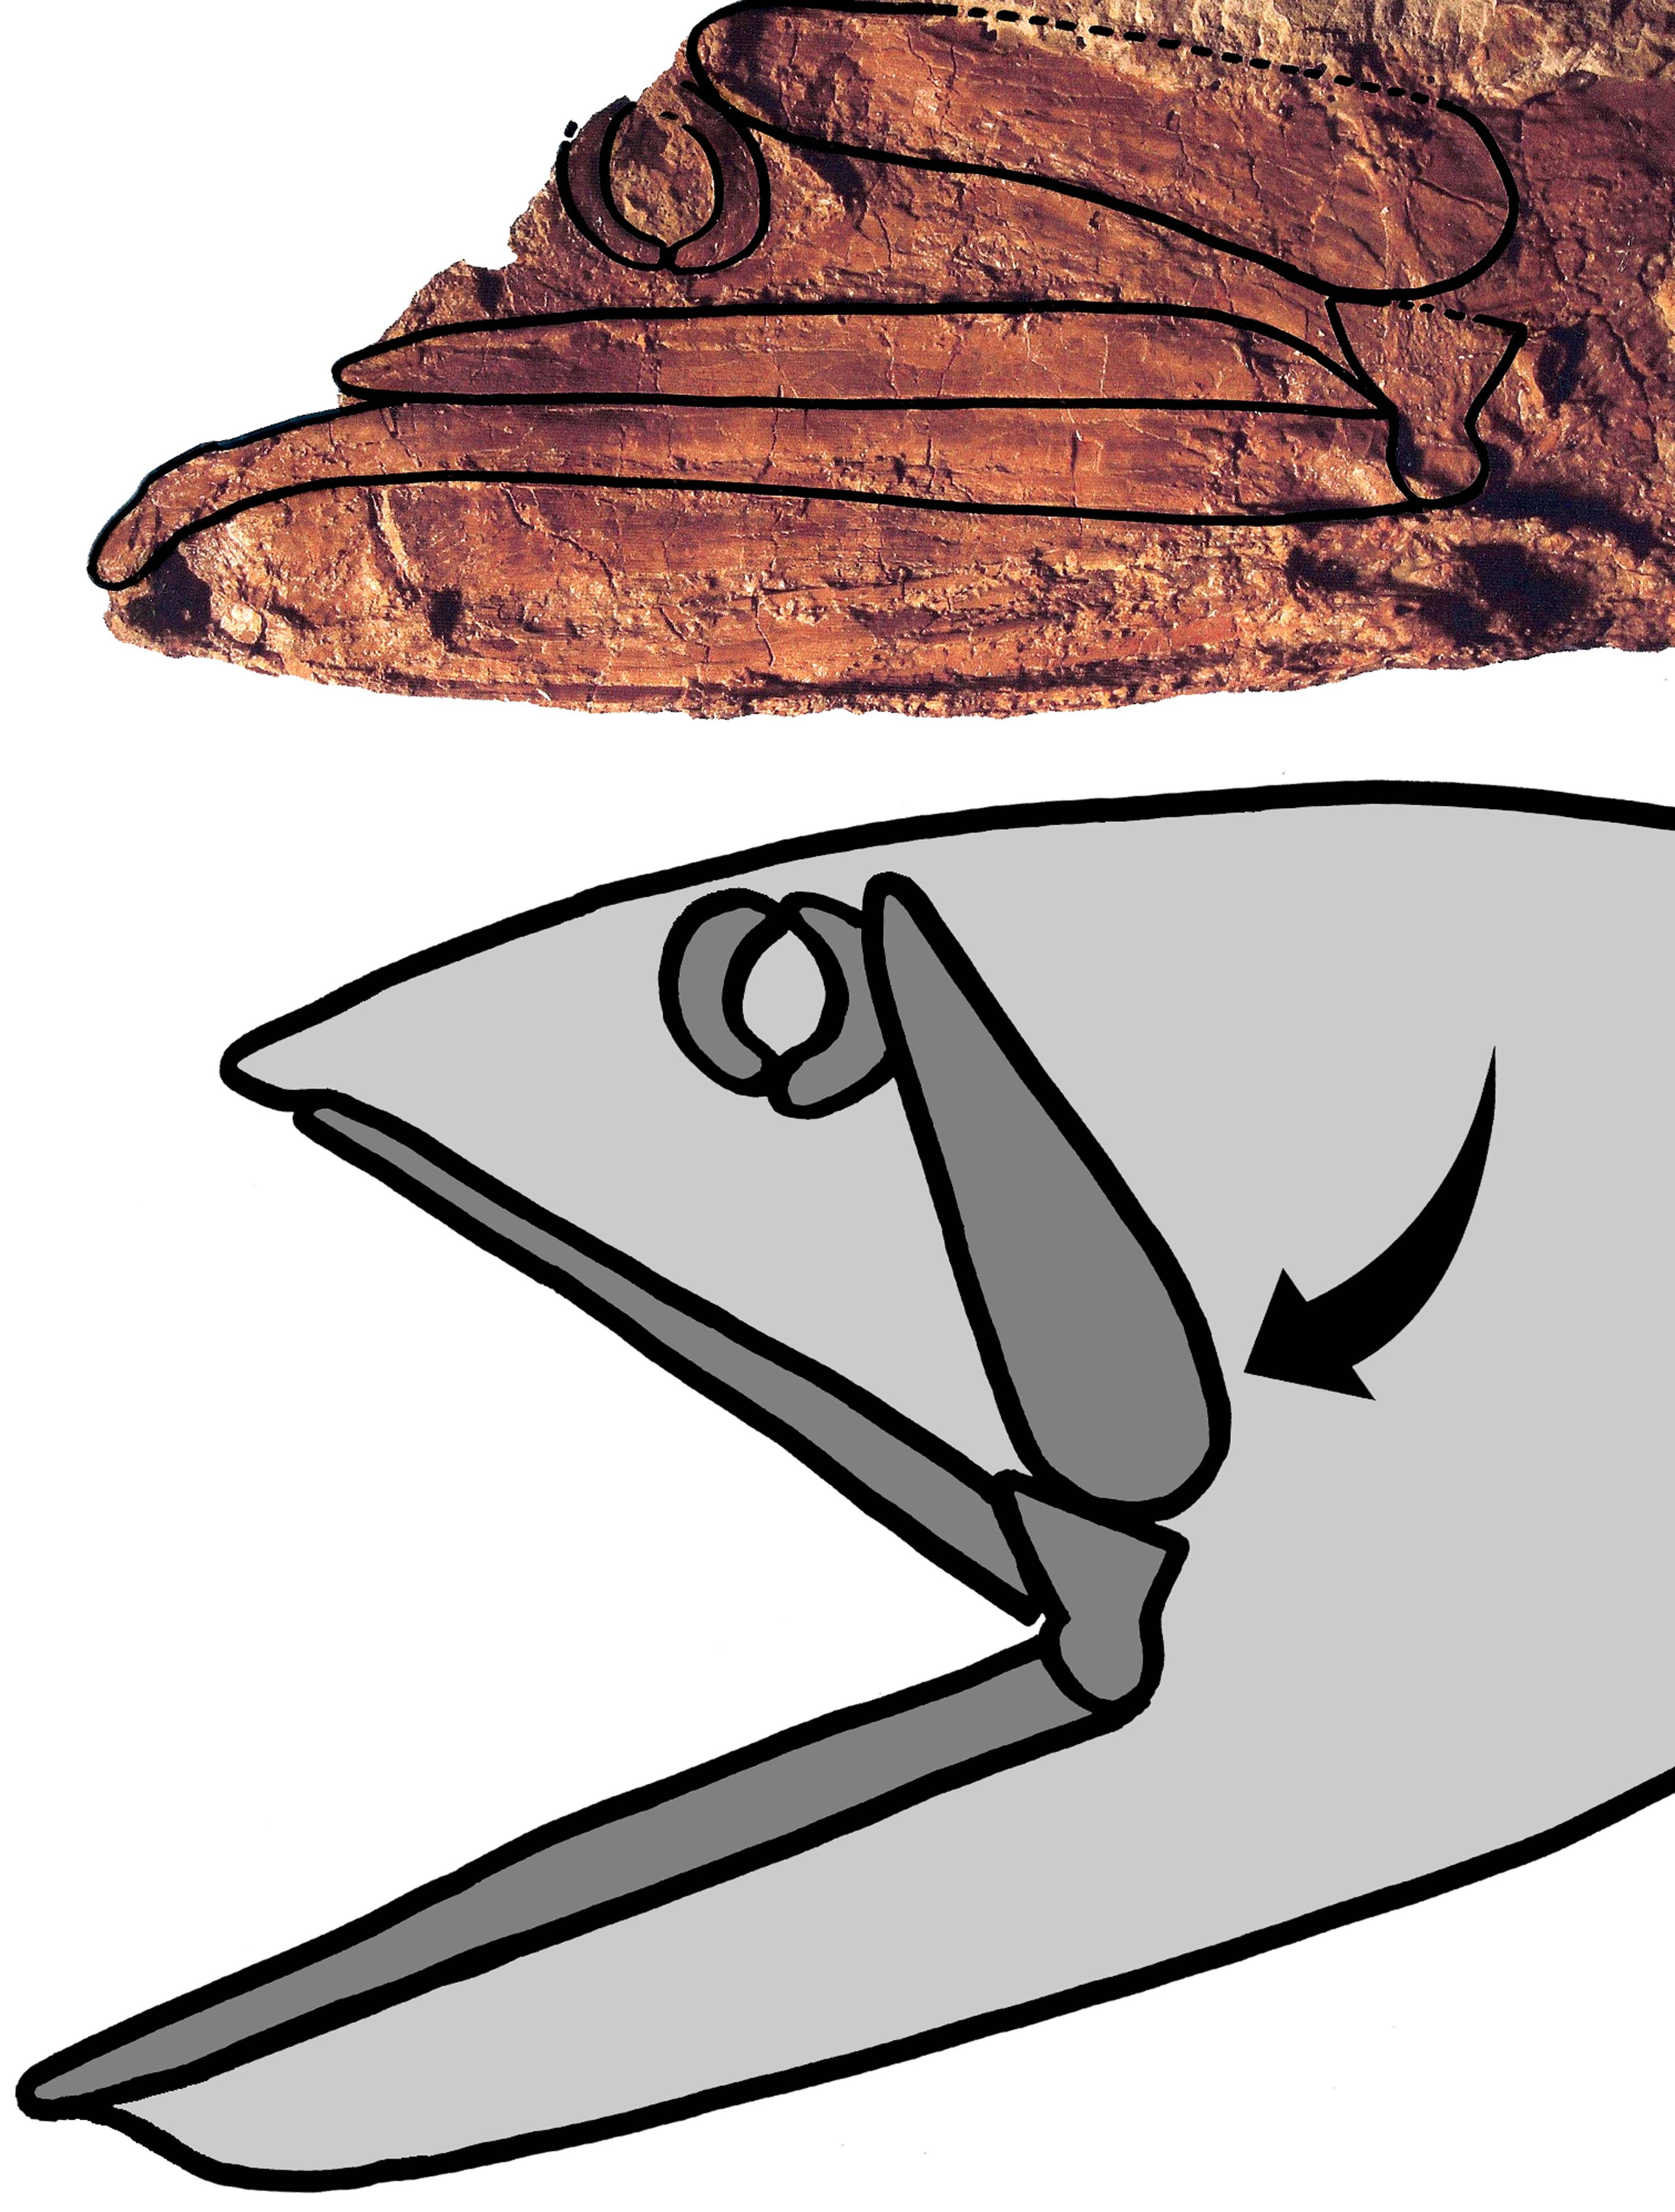 Rhinconichthys Jaw Bones